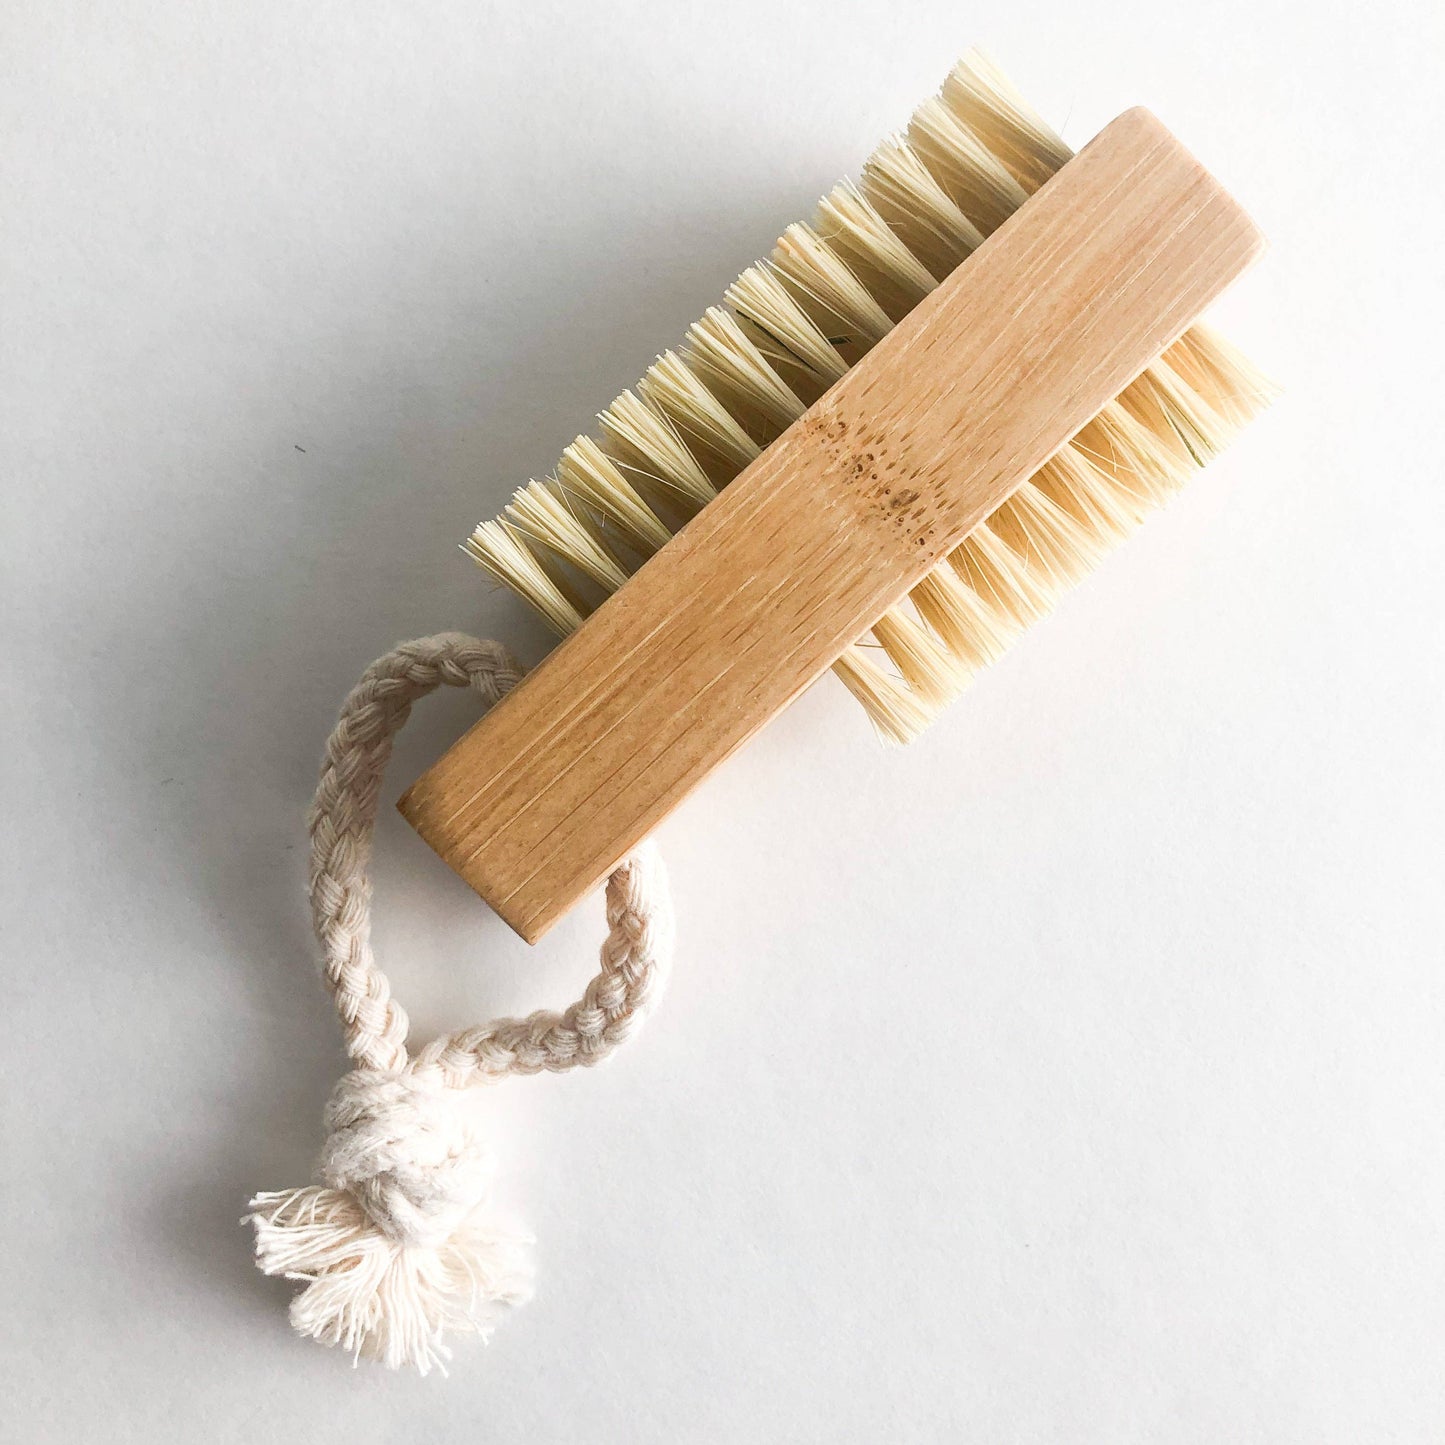 Double Sided Bamboo Nail Brush - Natural Sisal Bristles